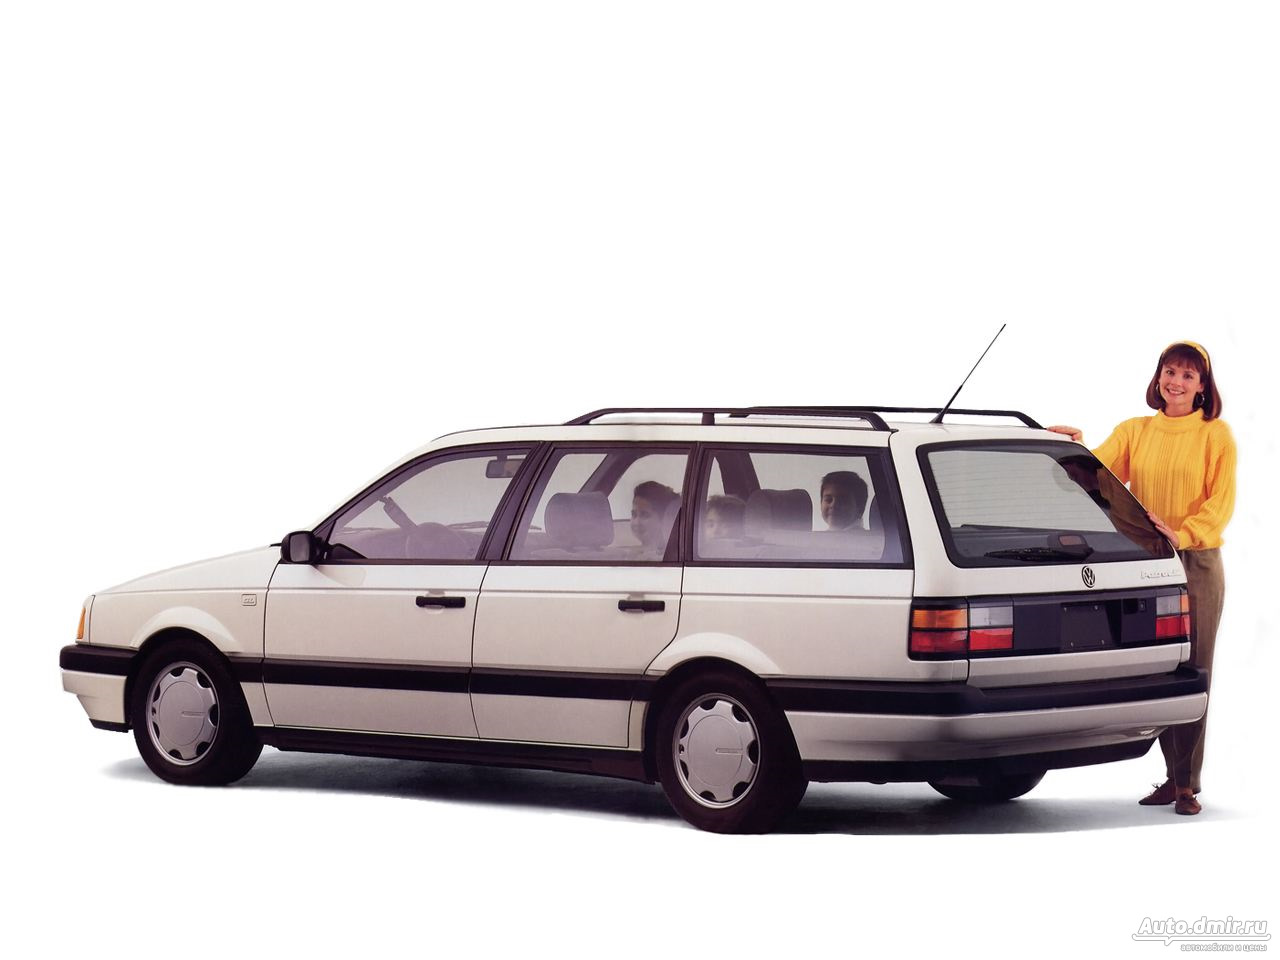 Фольксваген пассат 3 универсал. Volkswagen Passat b3 универсал. Volkswagen Passat b3 Wagon. Volkswagen Passat b3 1990 универсал. Volkswagen Passat b3 variant.